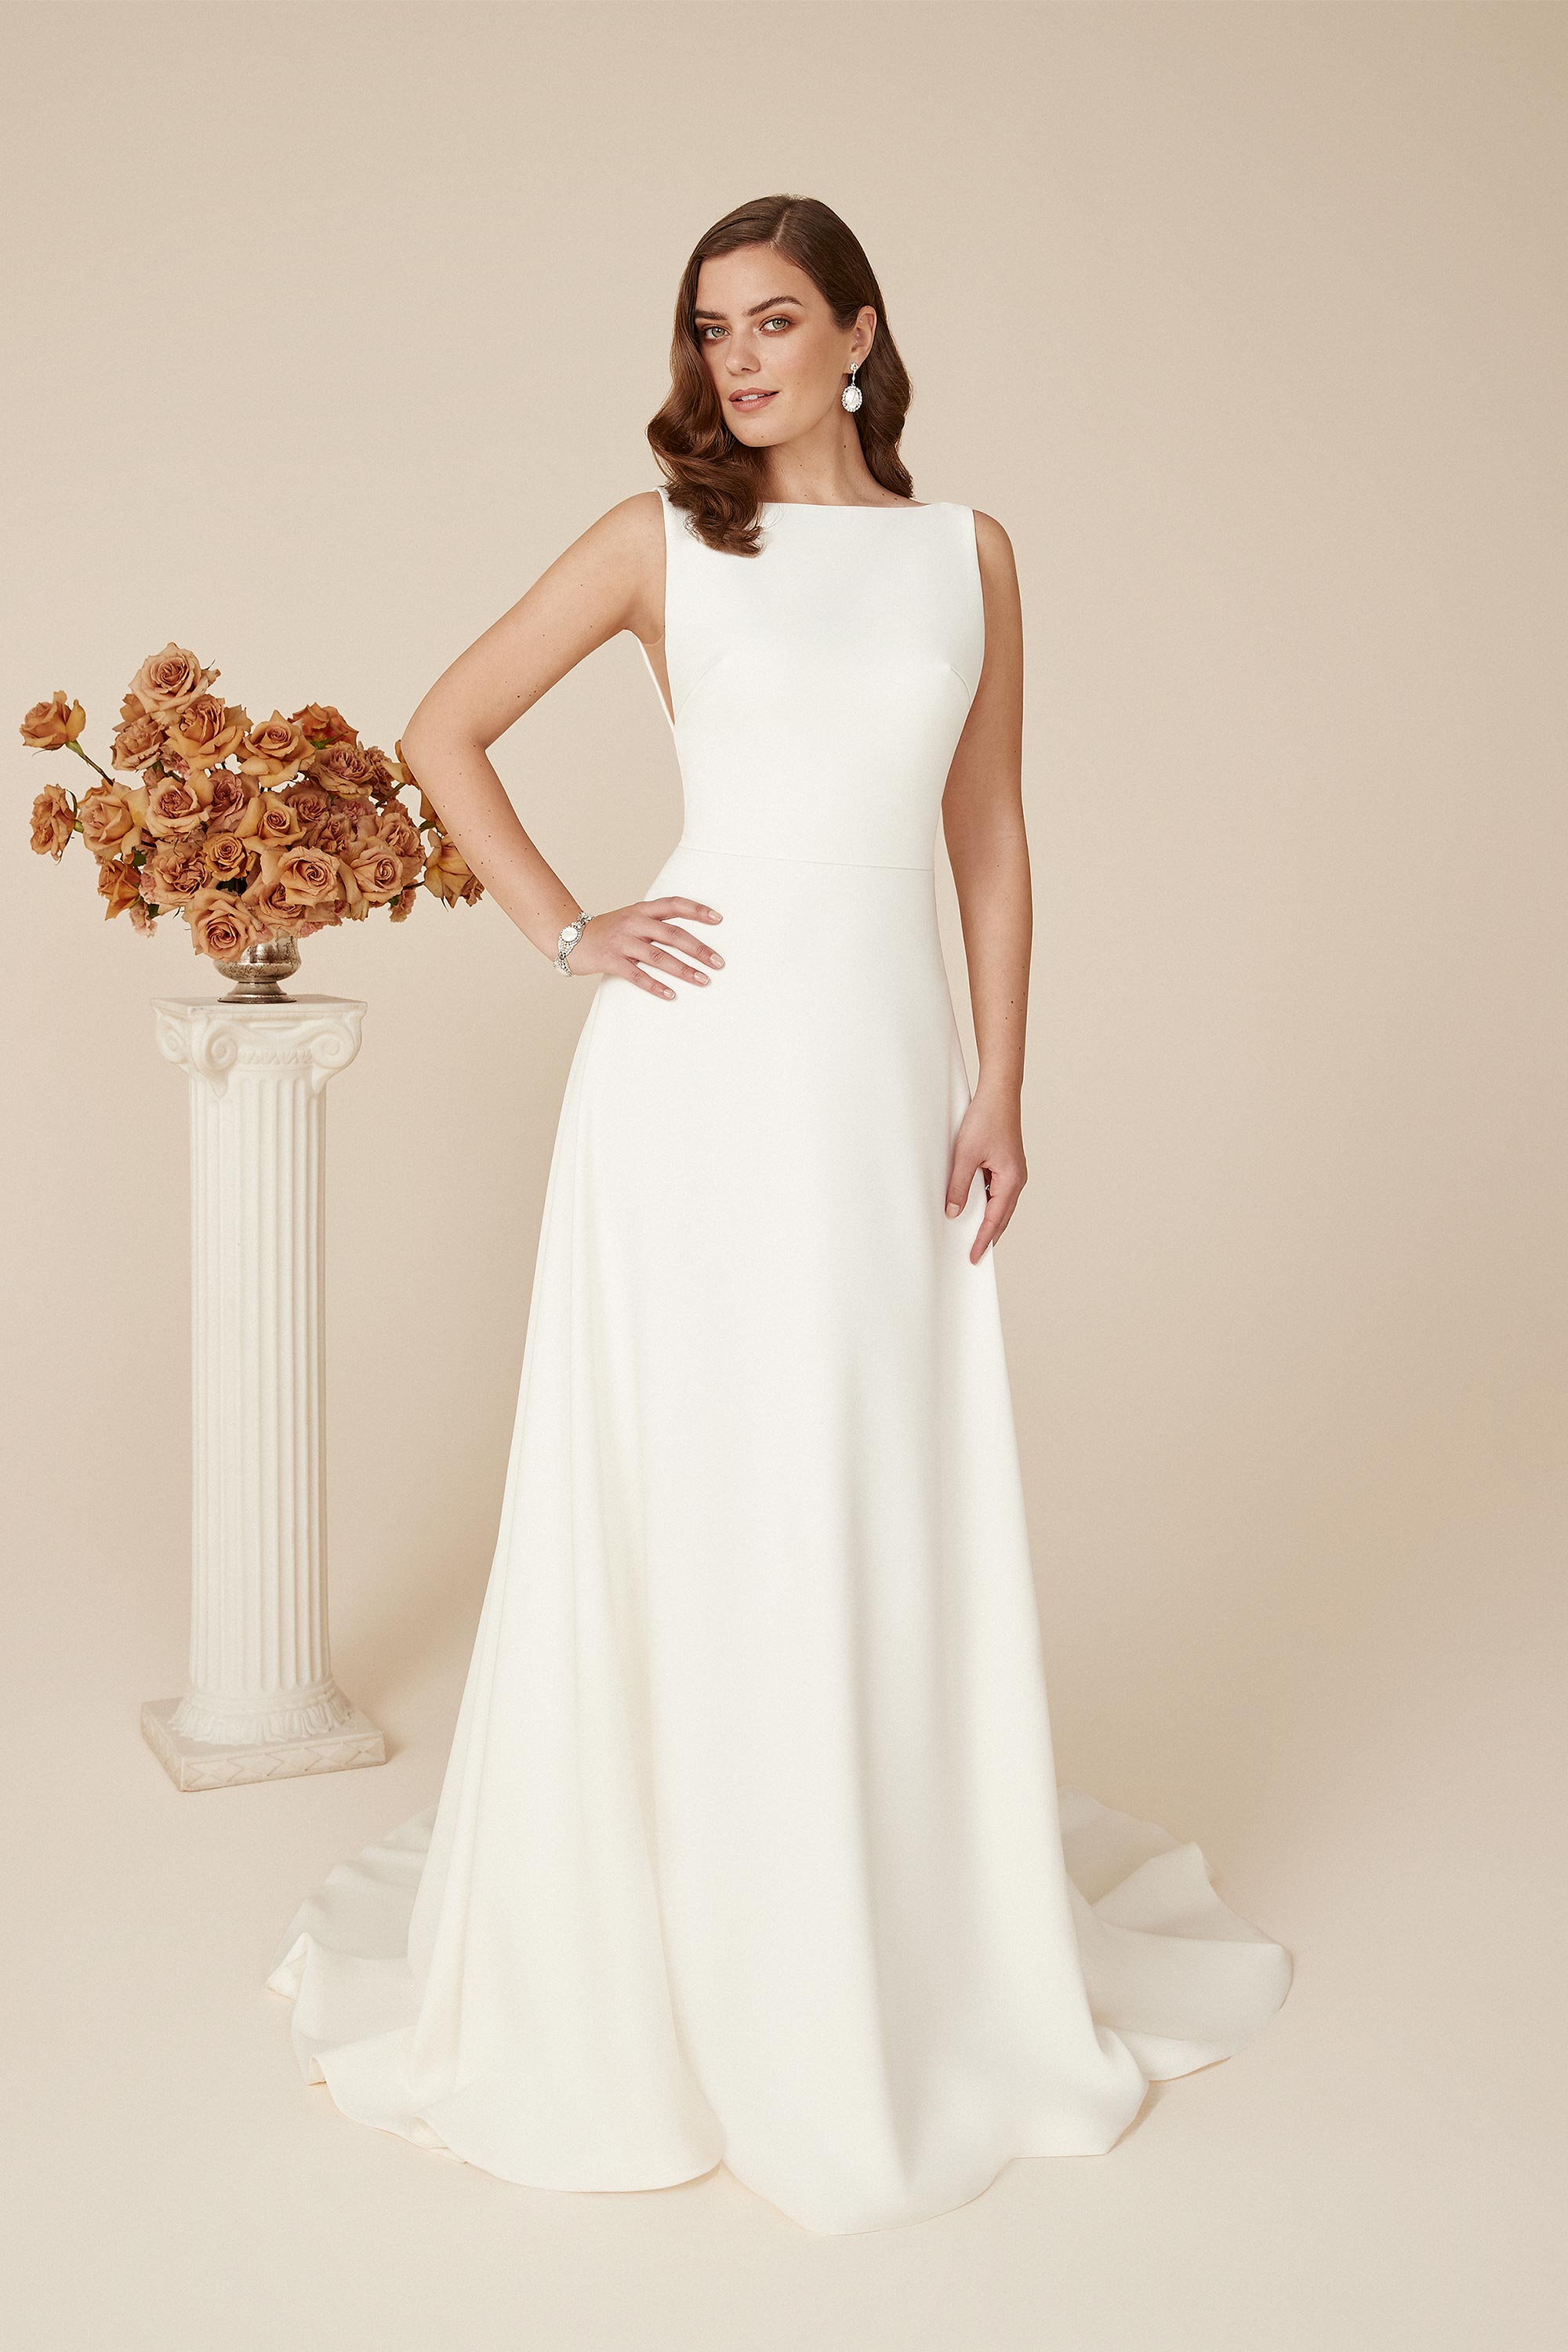 Scout *échantillon taille 10* - robe de mariée minimaliste, intemporelle et élégante en crêpe extensible avec jupe droite et dos ouvert